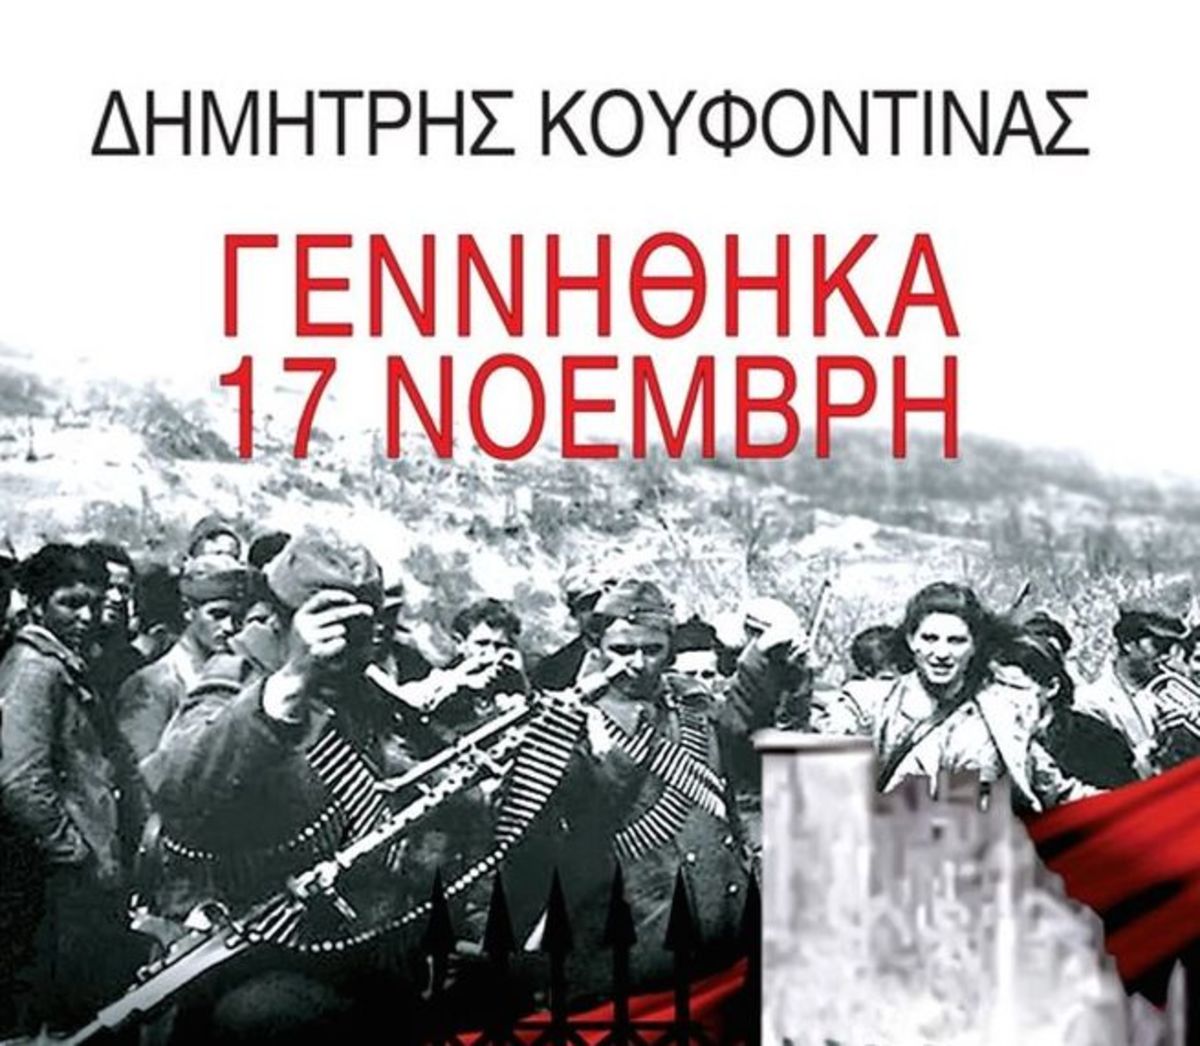 ΝΔ: Στέλεχος του ΣΥΡΙΖΑ διαφημίζει το βιβλίο Κουφοντίνα